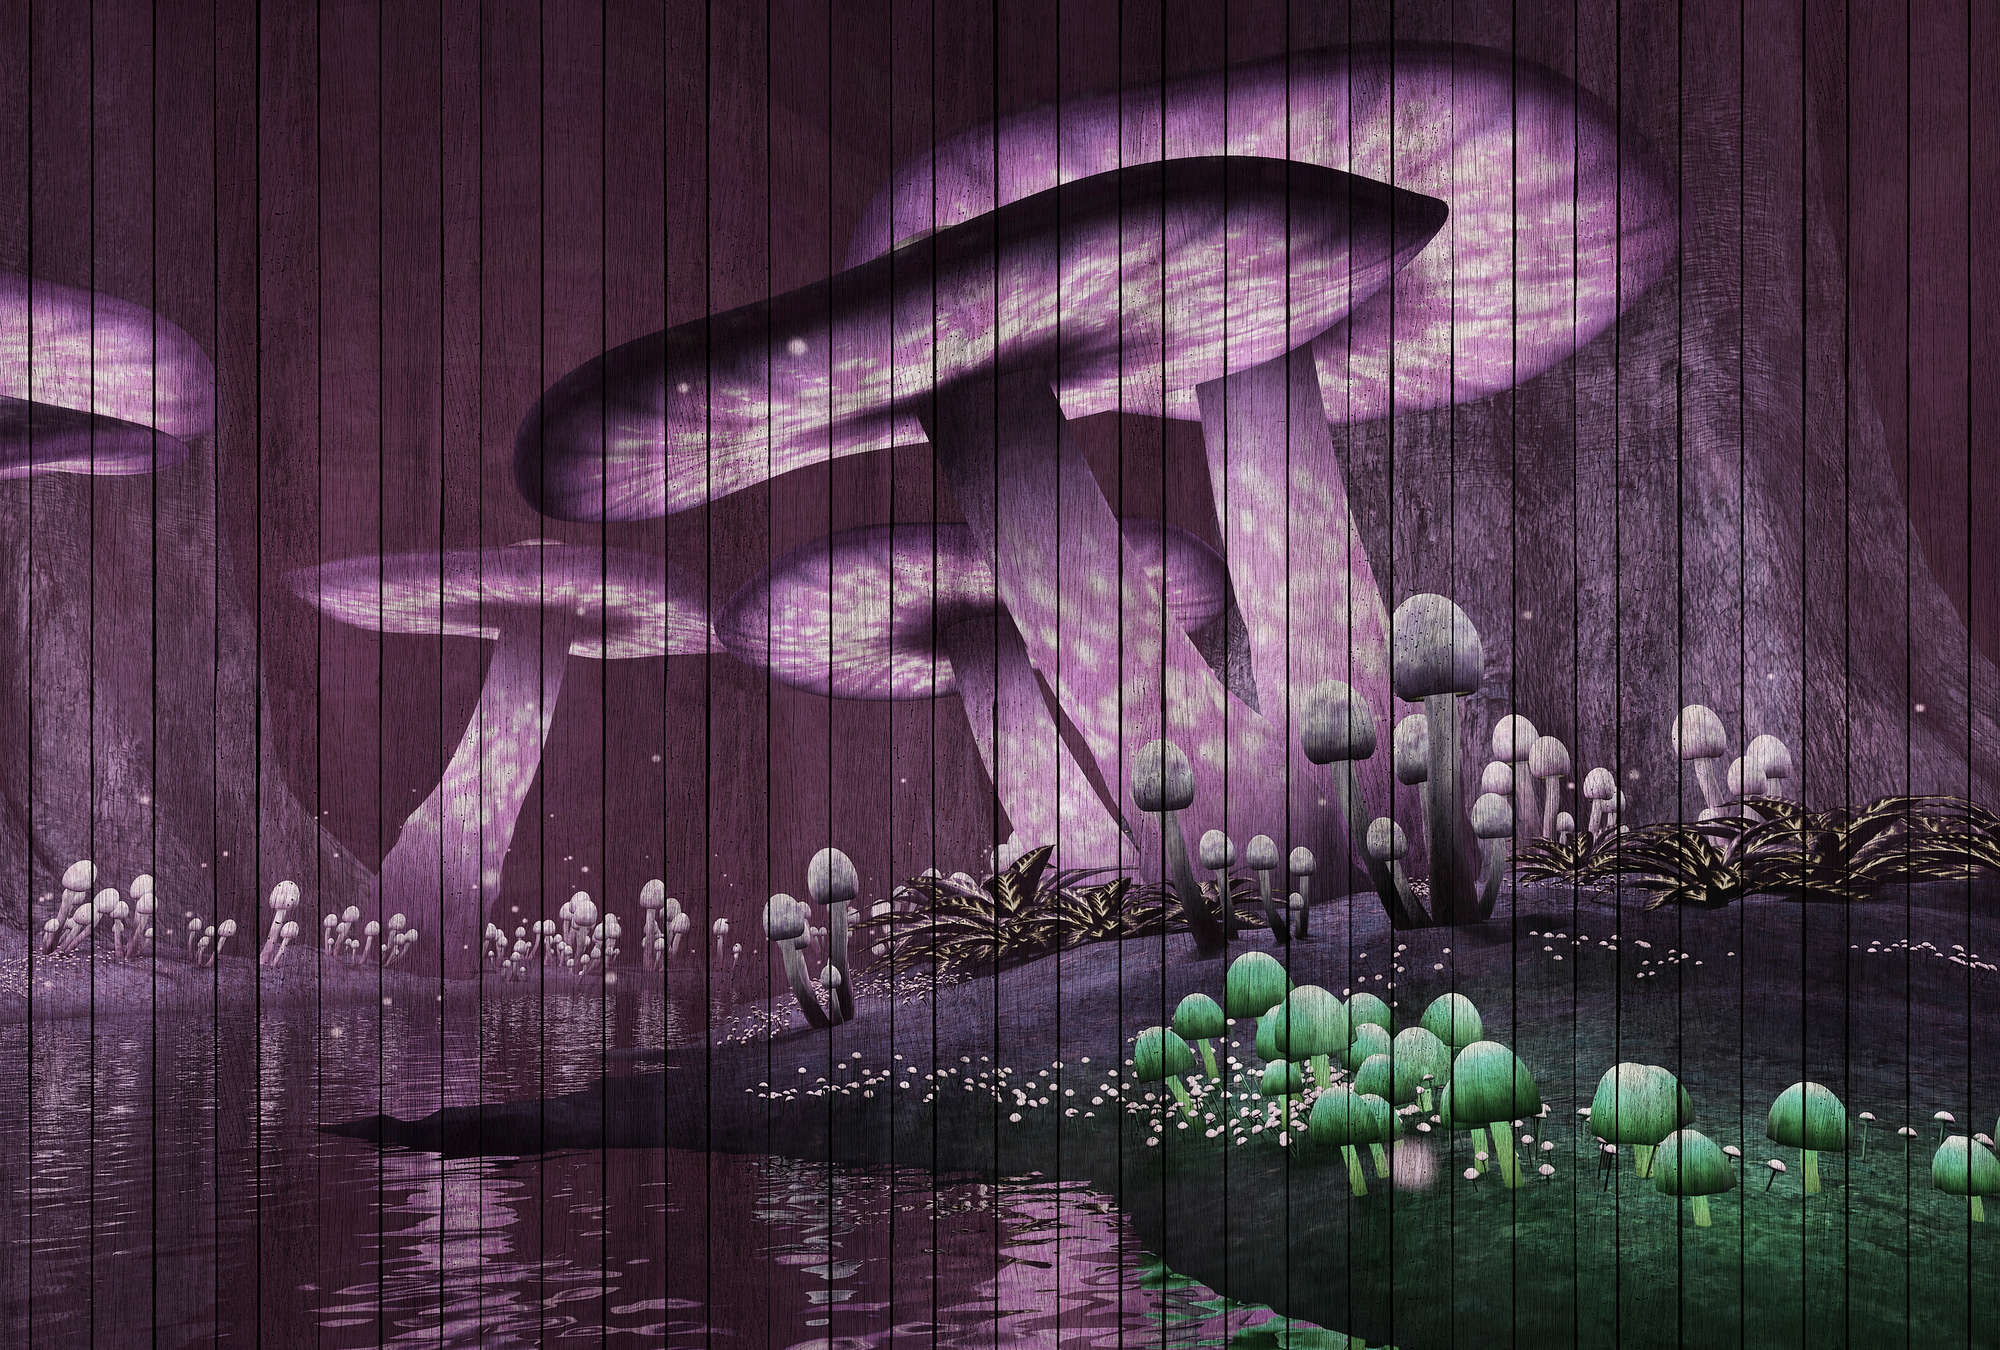             Fantasía 2 - Fotomural bosque mágico con estructura de paneles de madera - Verde, Violeta | Perla liso no tejido
        